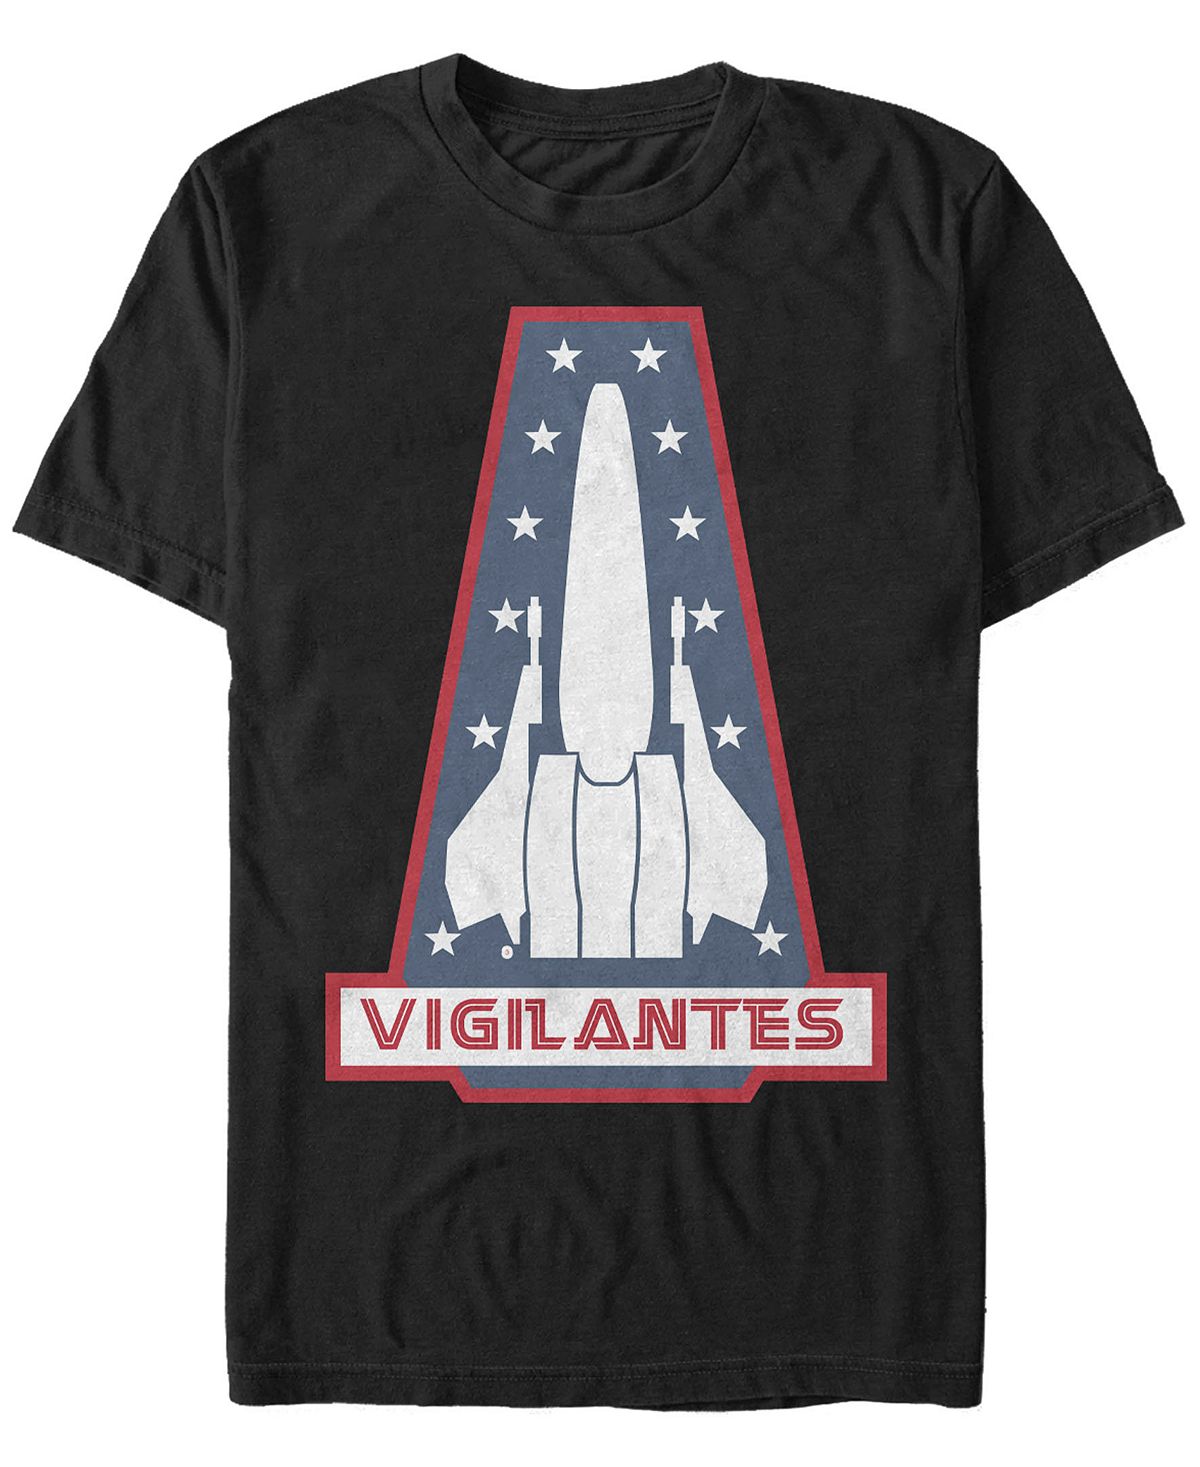 Мужская футболка с коротким рукавом с логотипом battlestar galactica vigilantes Fifth Sun, черный